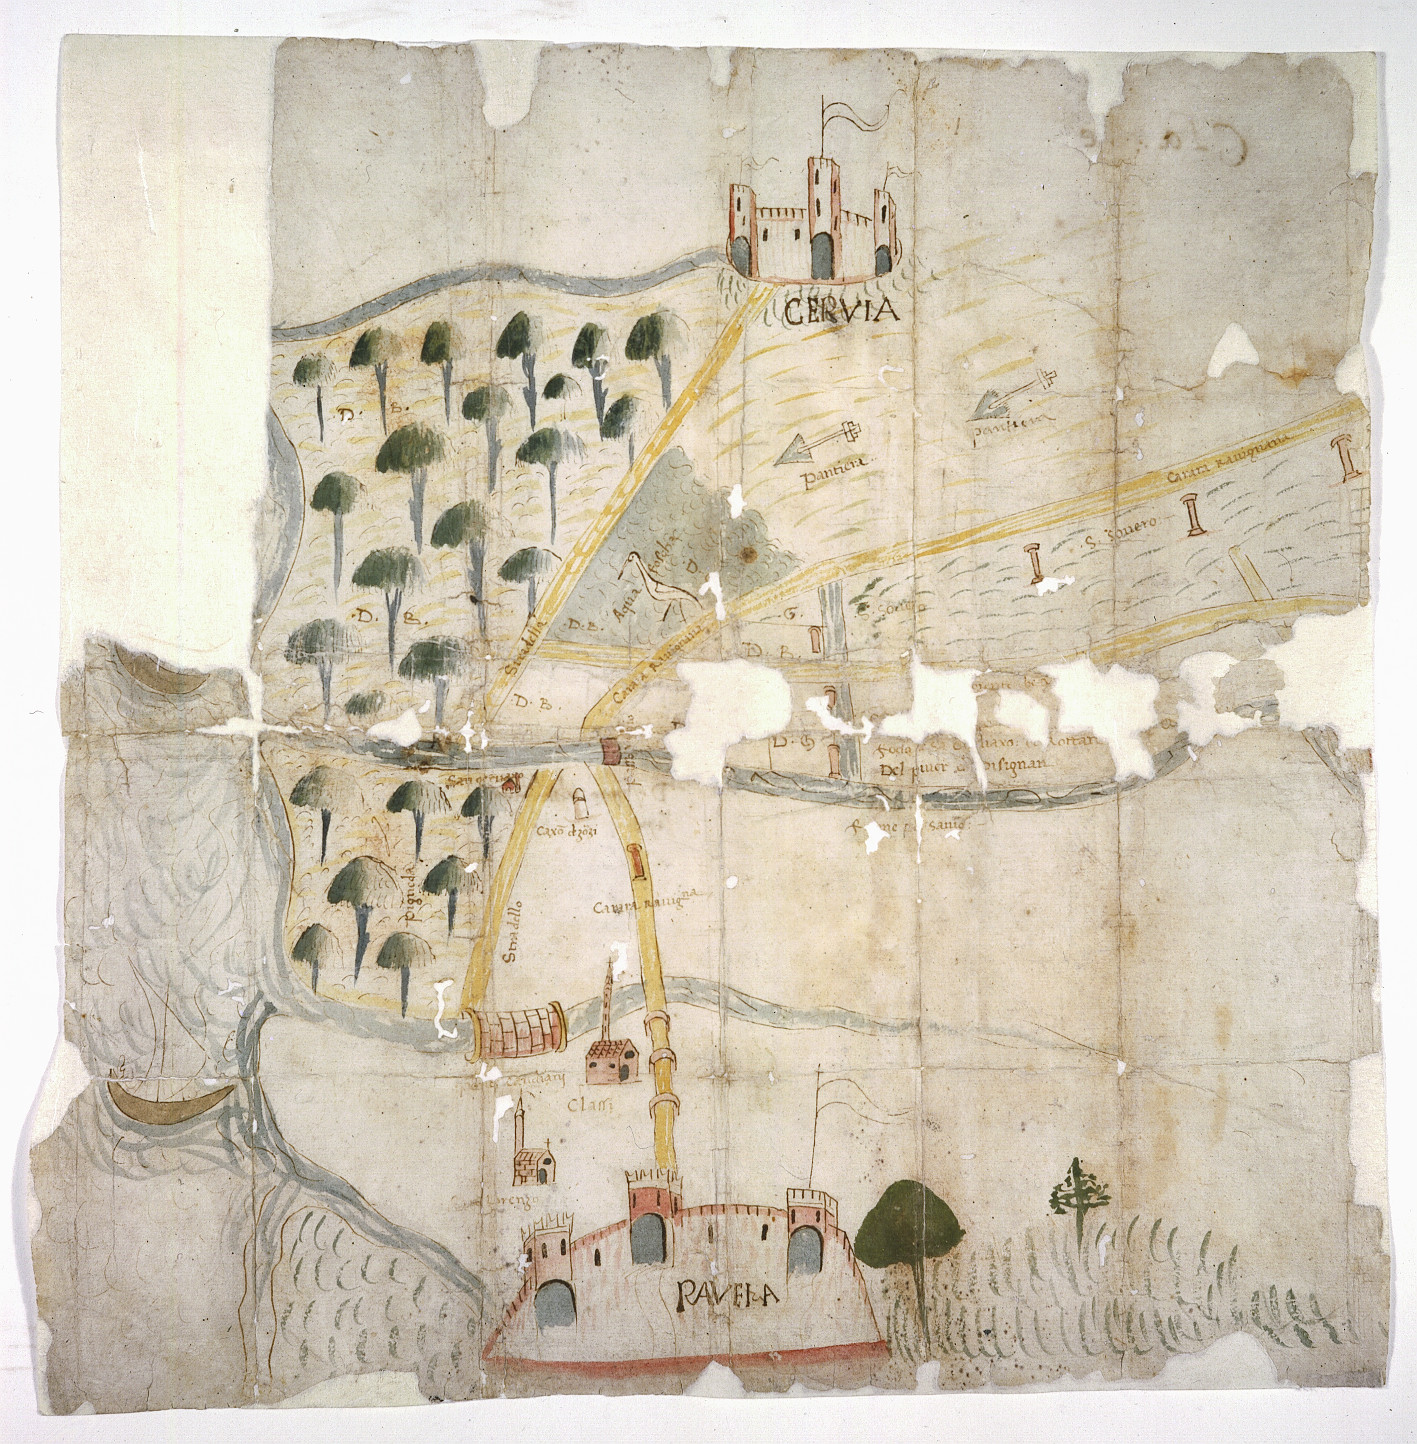 Territorio tra Ravenna, Cervia e il mare Adriatico
autore: ignoto
data: secolo XV, seconda metà
dimensioni: cm 43,3x42,8
